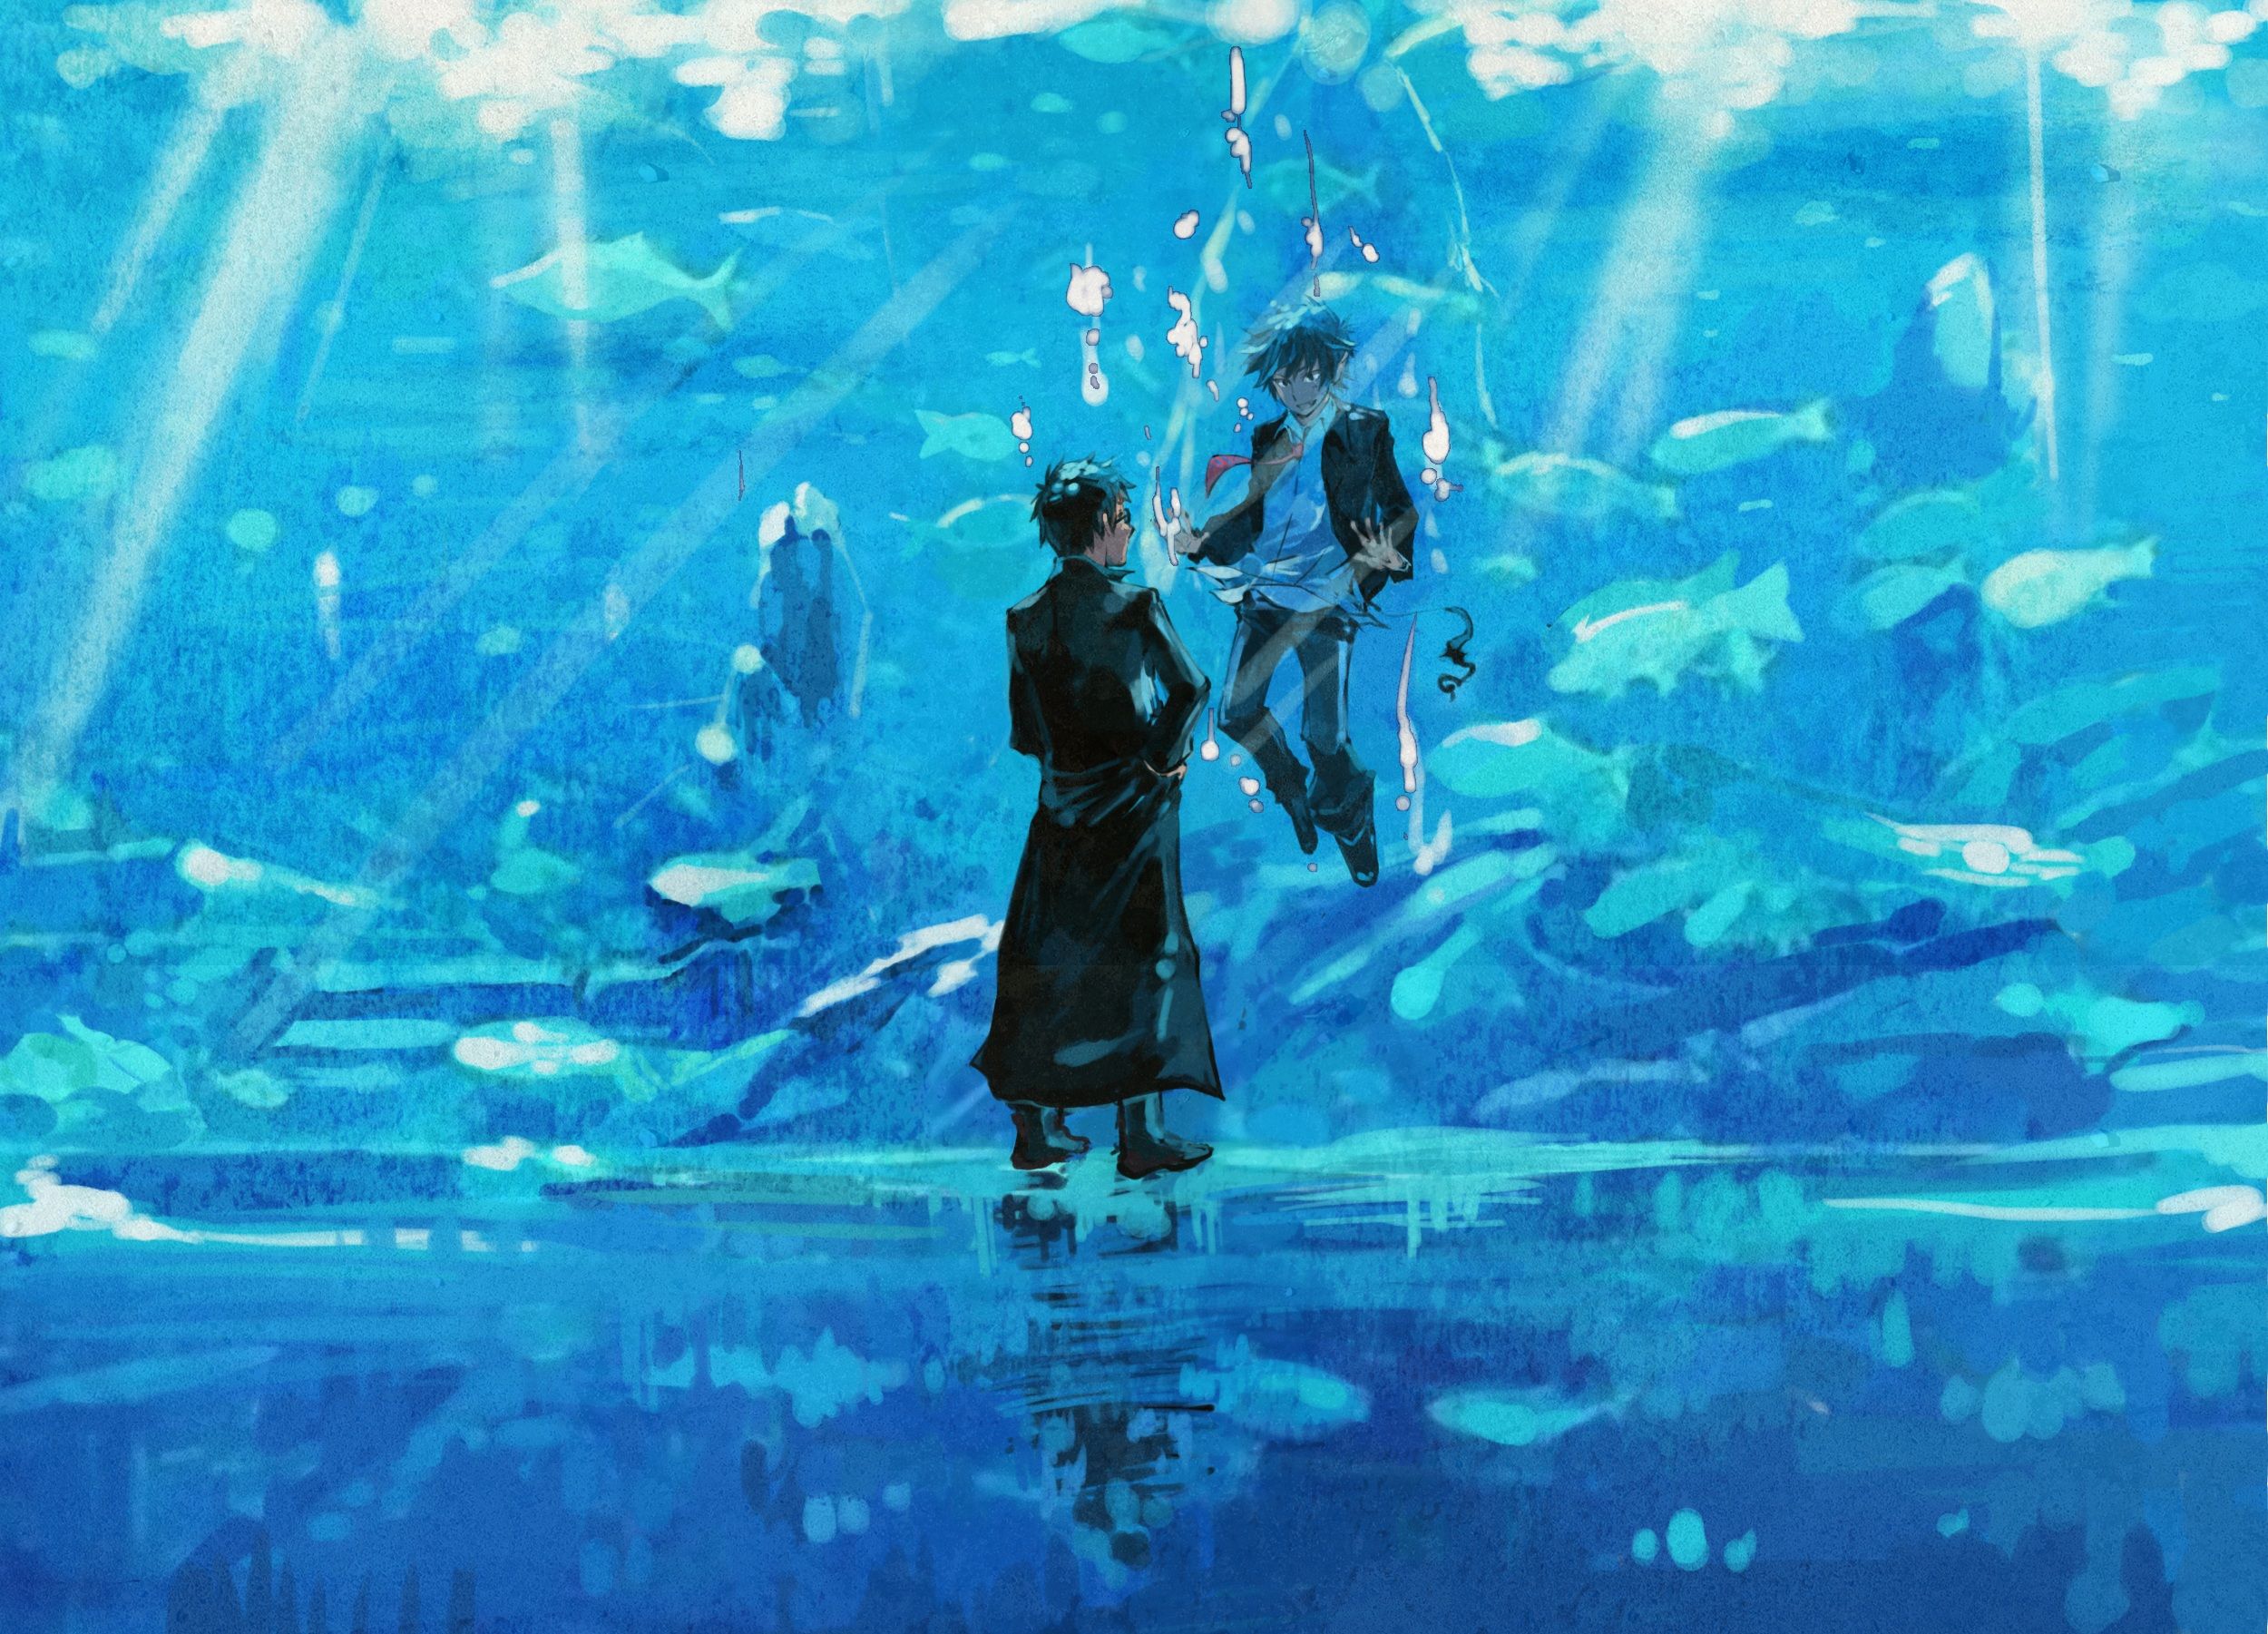 Yukio Okumura HD Wallpaper and Background Image